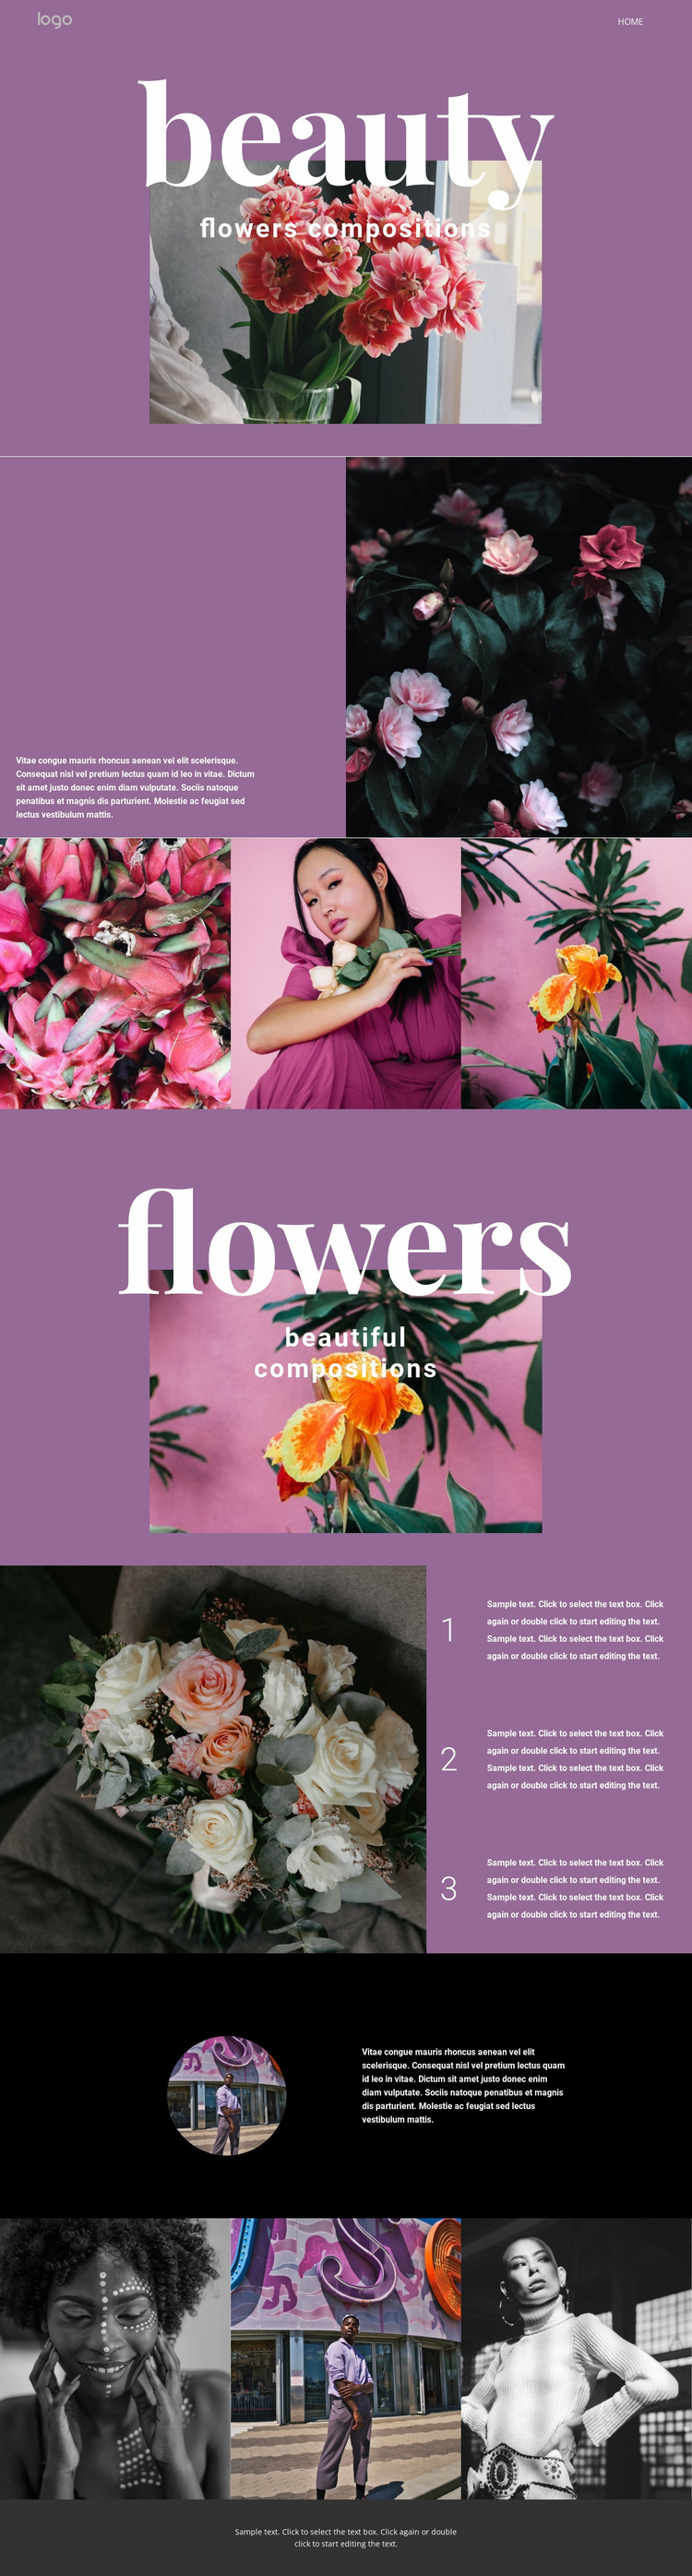 Flower salon Website Template